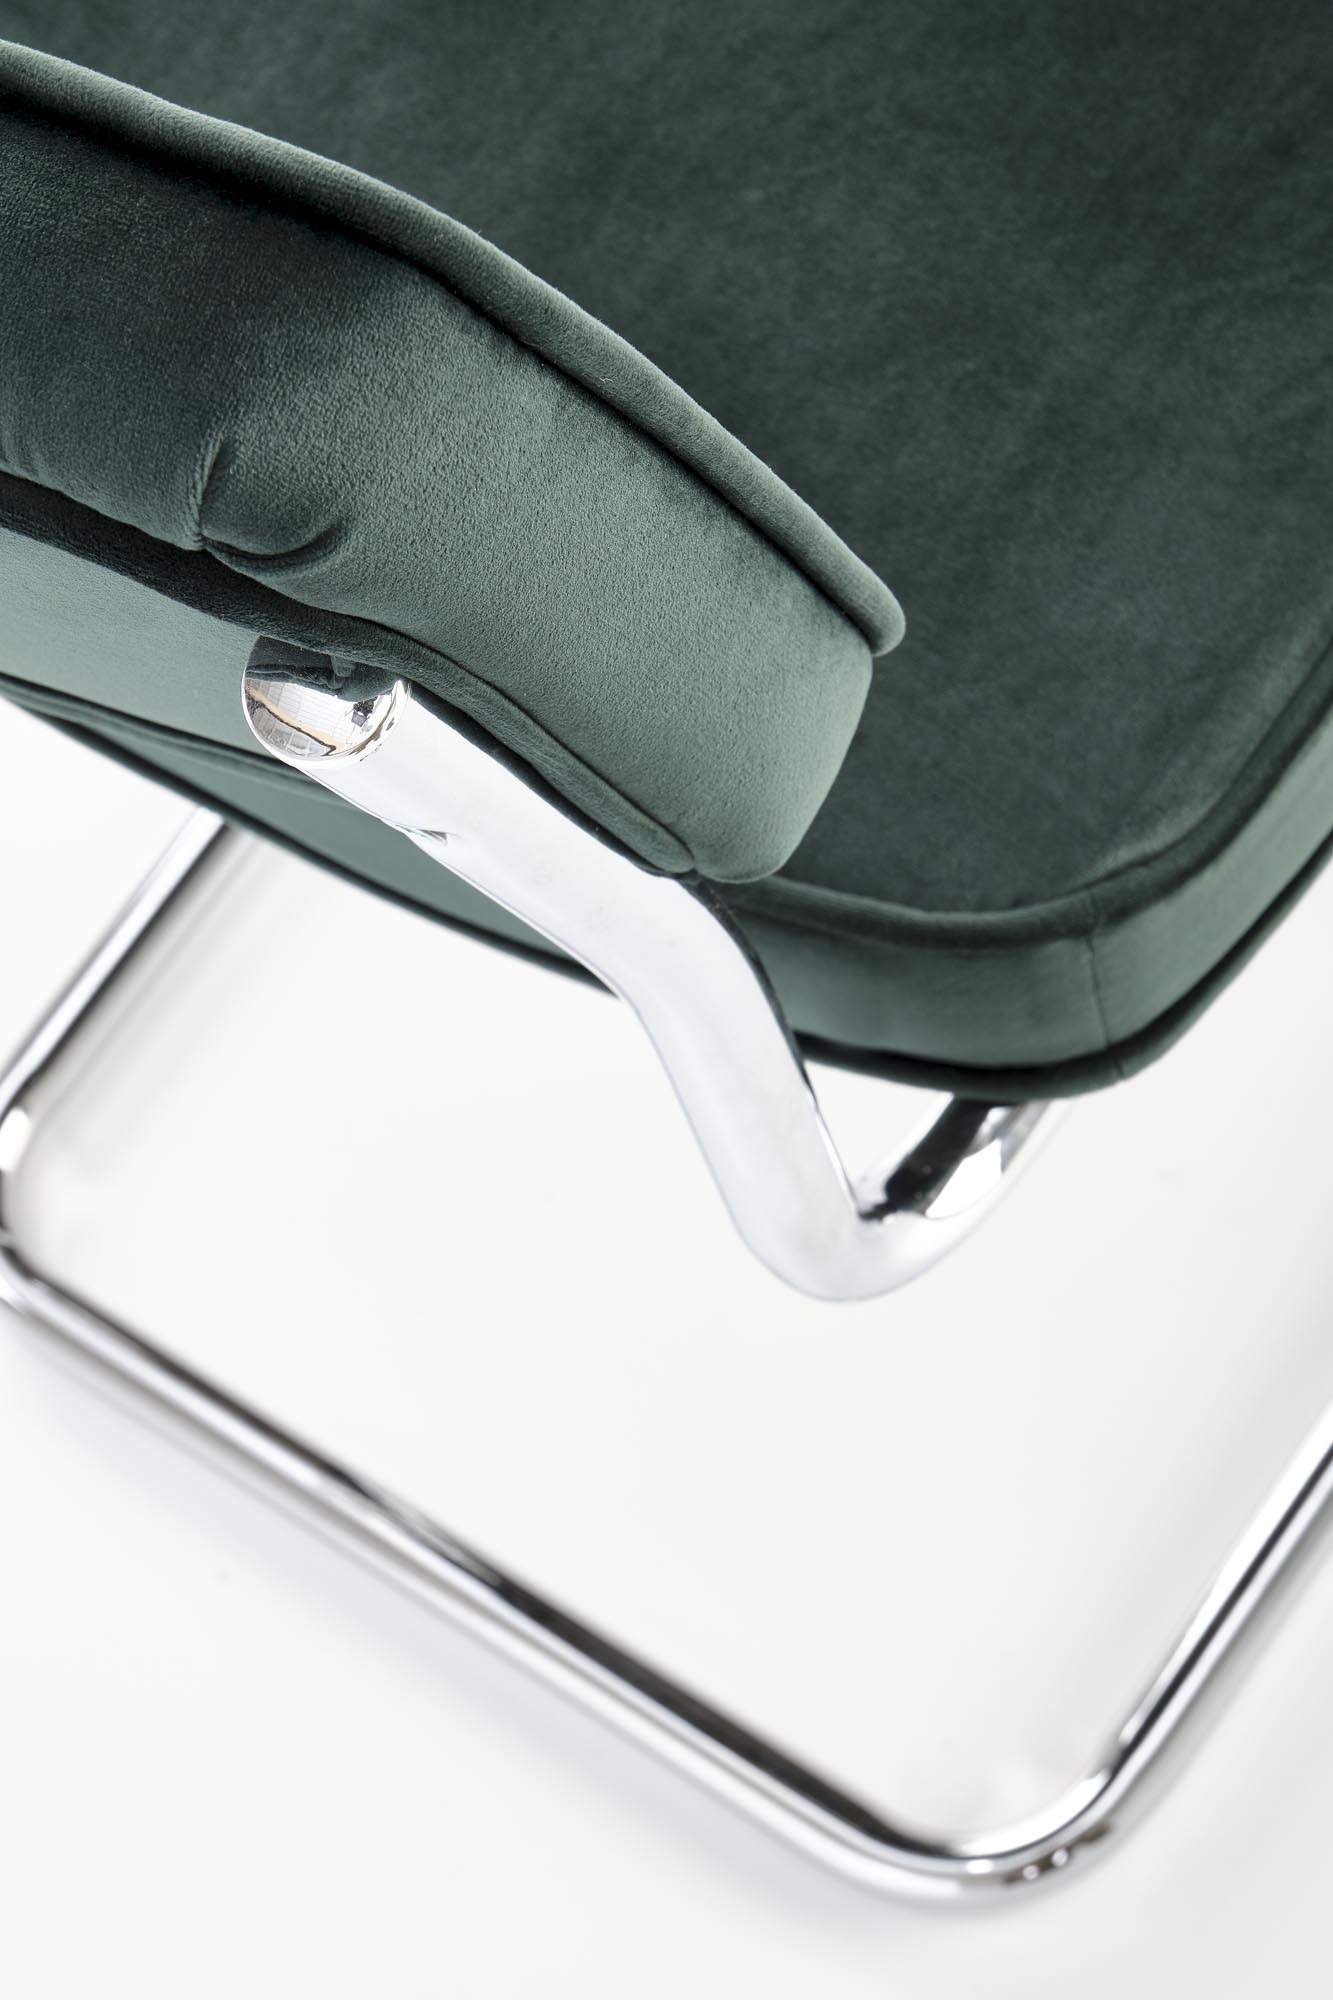 K510 Židle tmavý Zelený Židle matalowe k510 - tmavá Zeleň